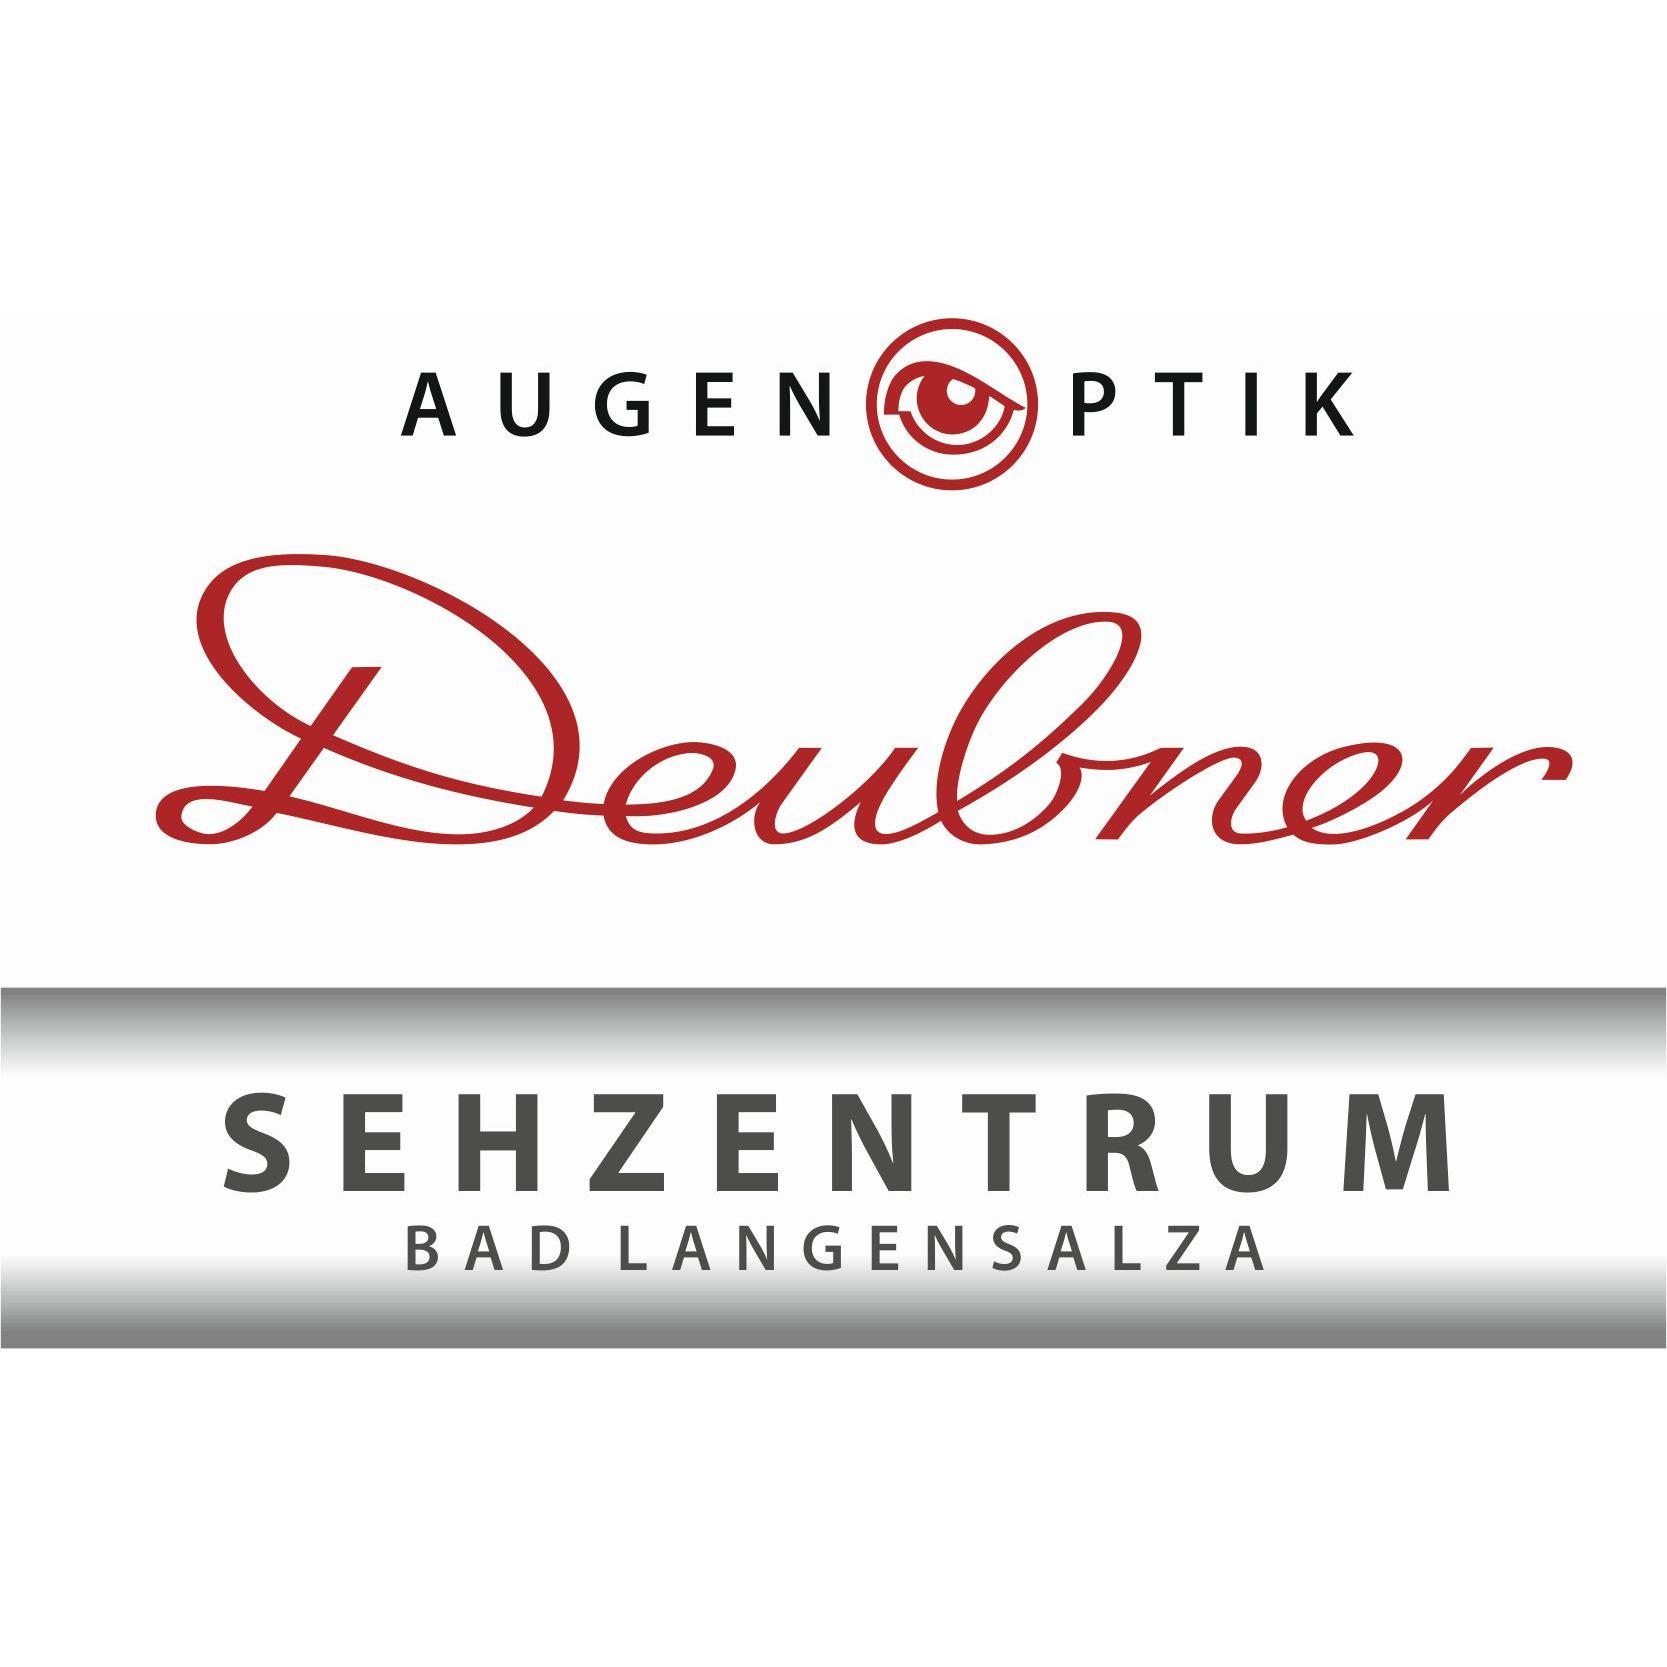 Deubner moderne Augenoptik GmbH